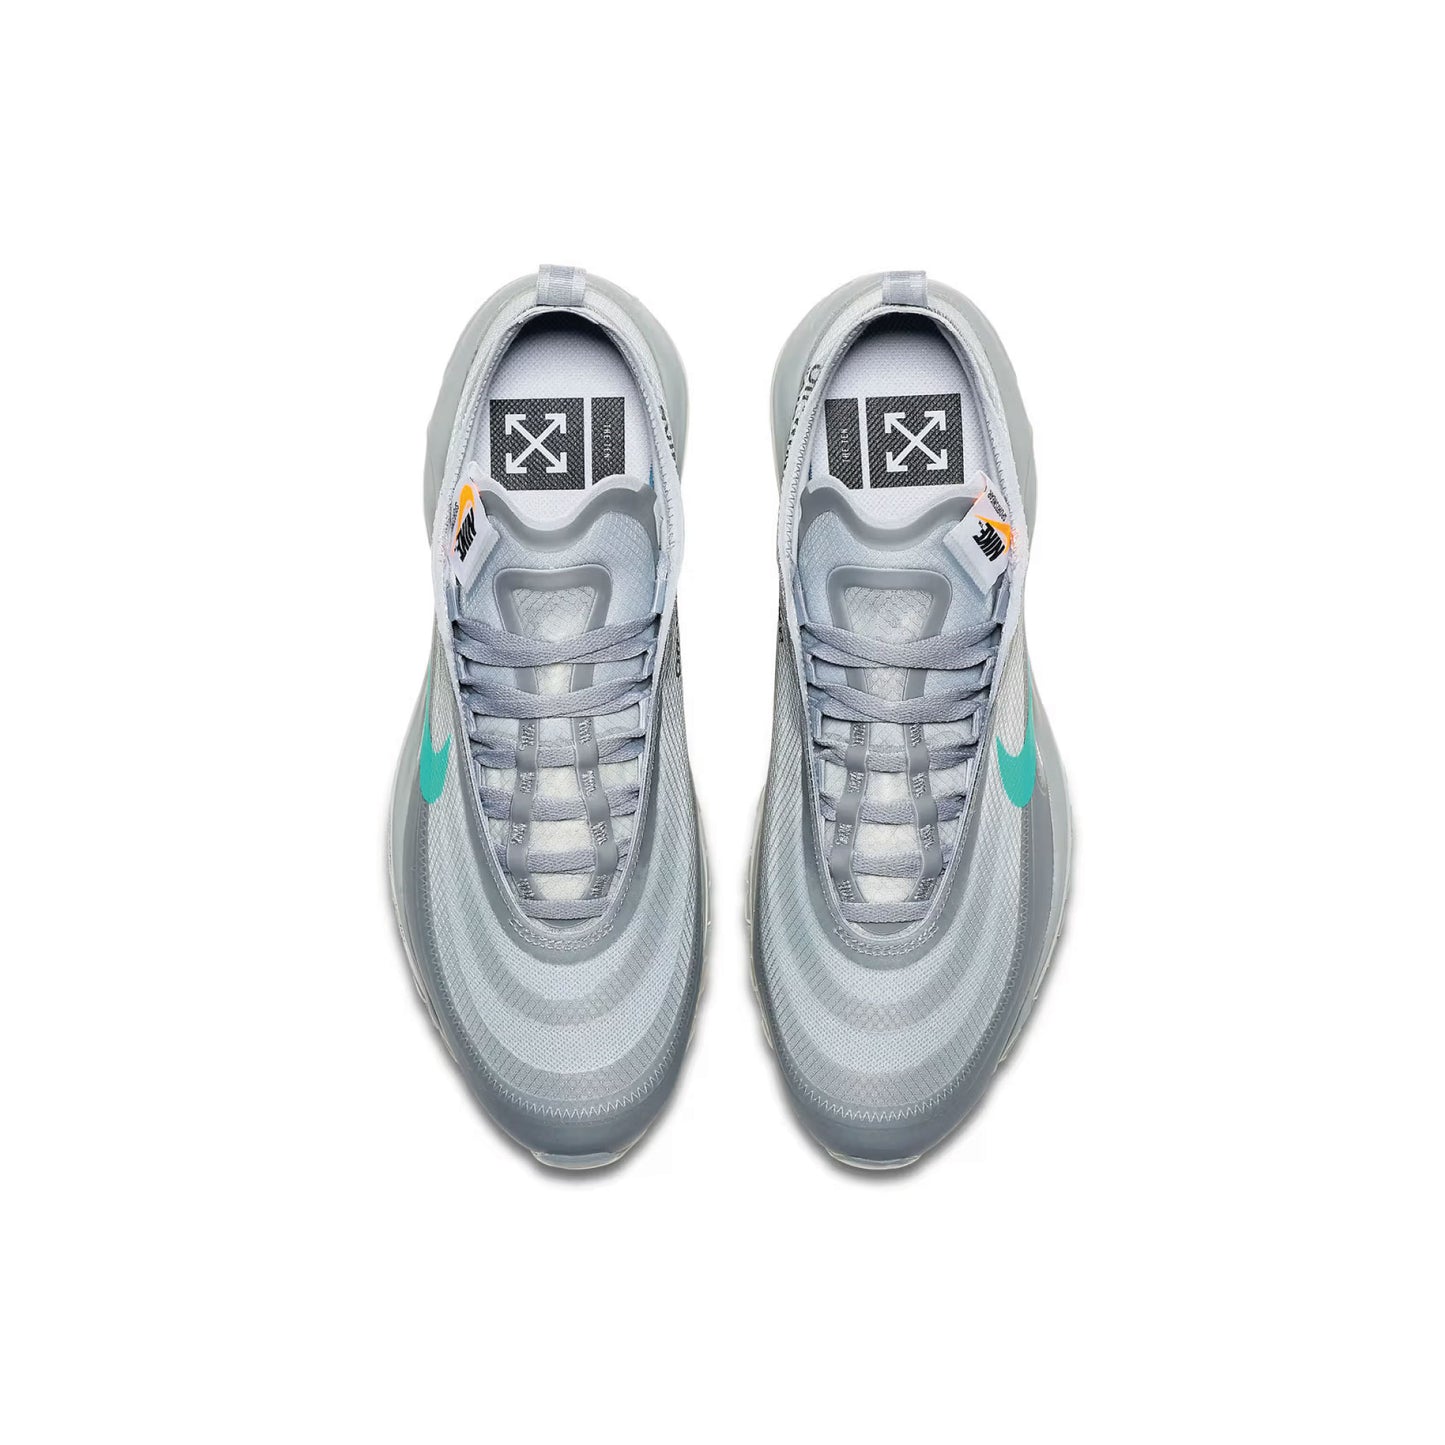 Nike x Off-White Air Max 97 'Menta'